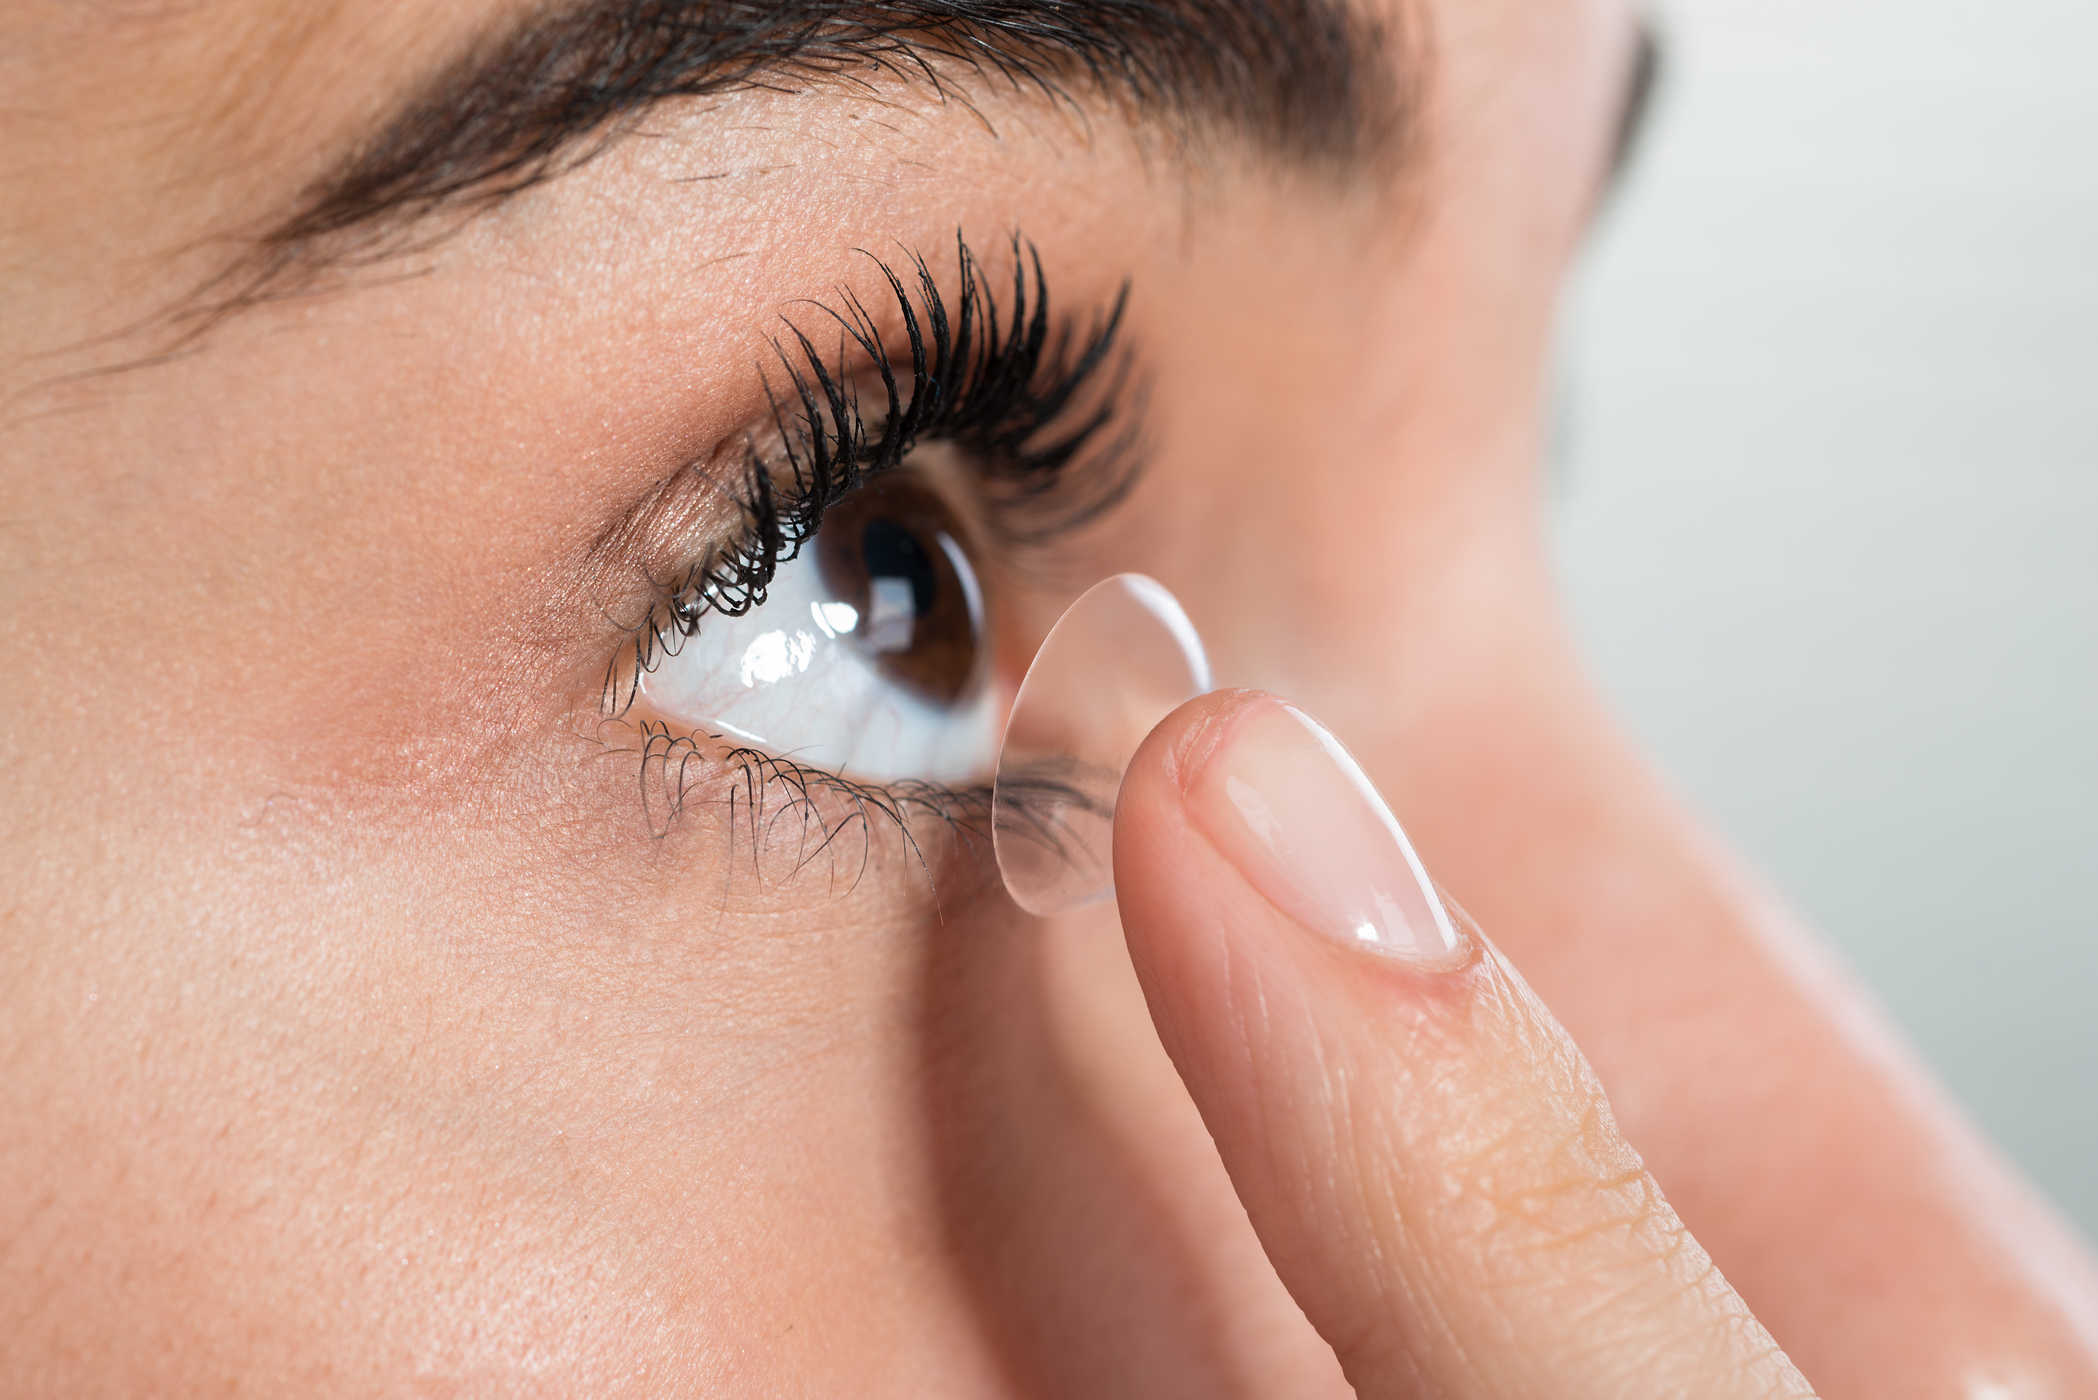   Sử dụng kính áp tròng chỉ một lần để đảm bảo mắt không bị dị ứng hay bị tổn thương  